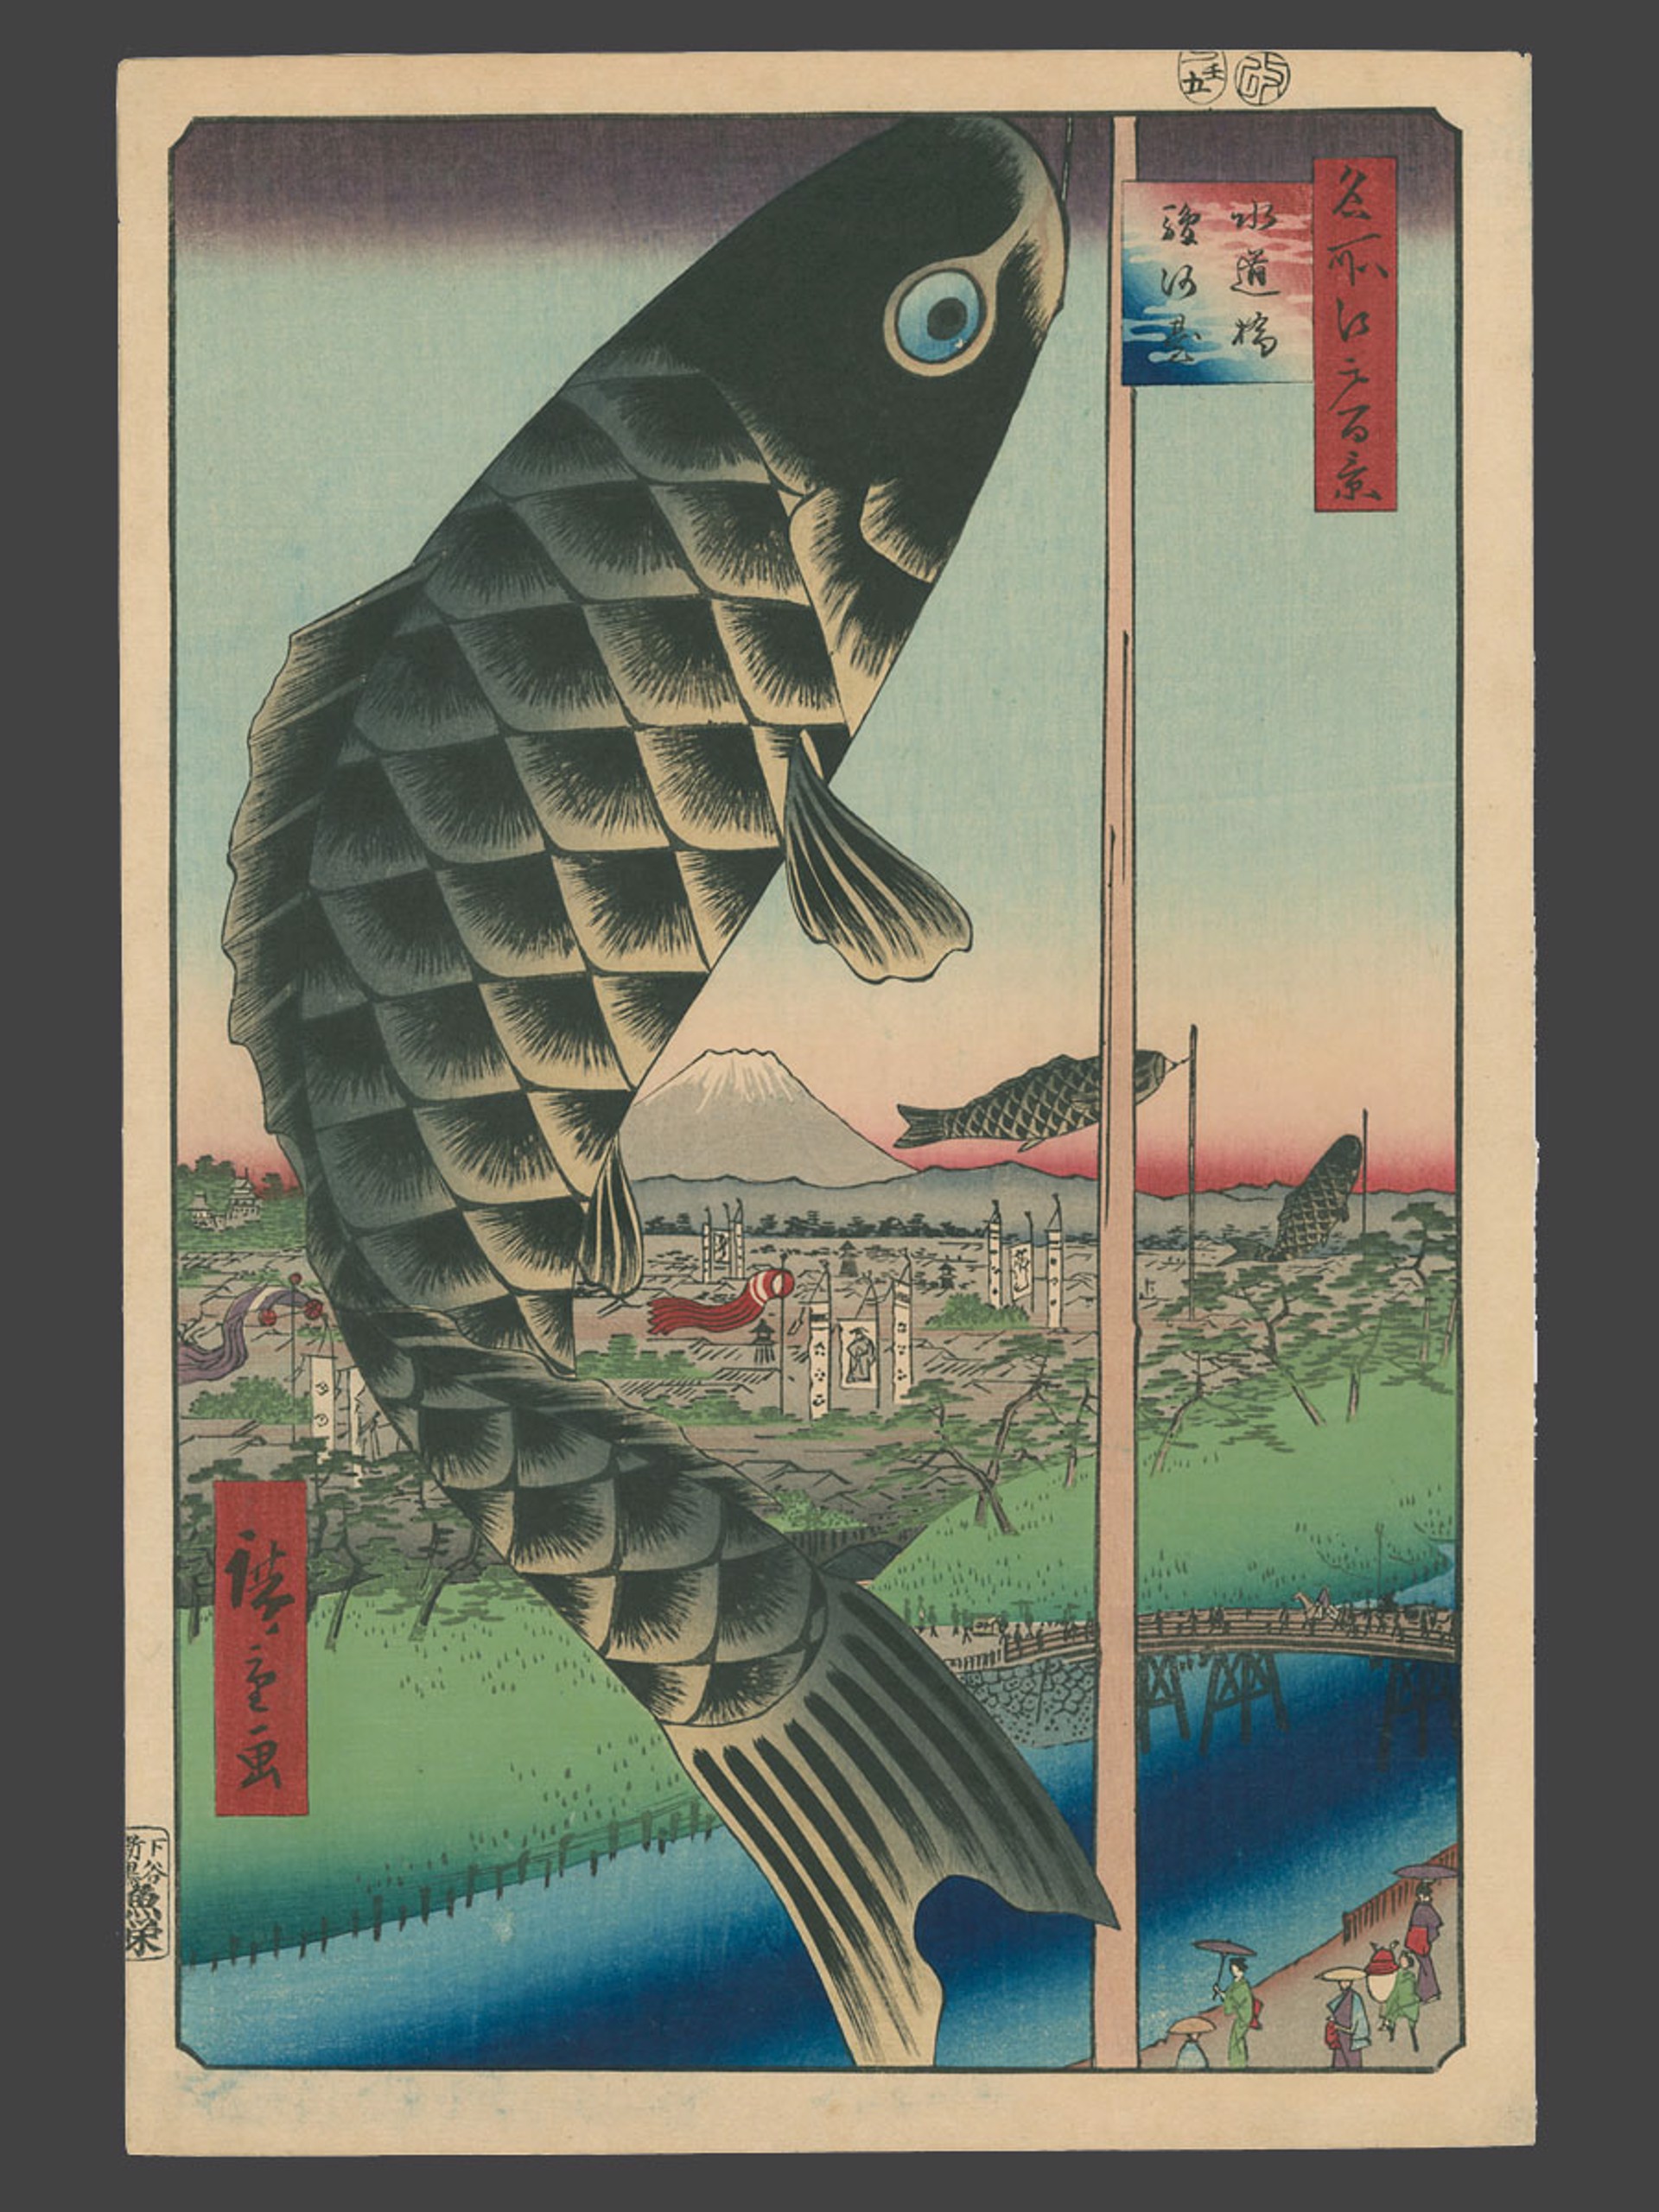 #48 Suido Bridge and Surugadai 100 Views of Edo by Hiroshige